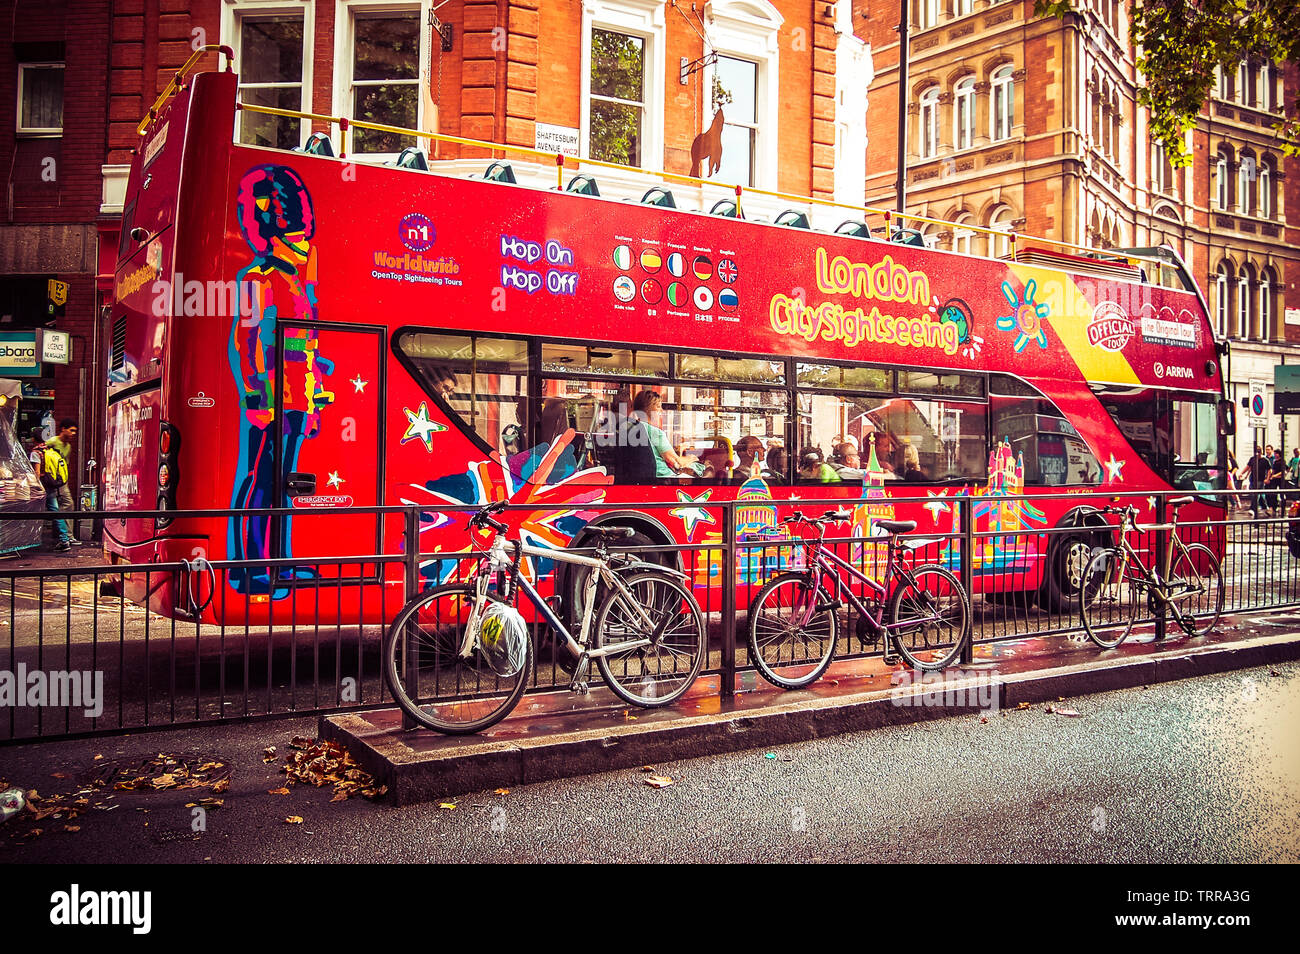 London City Sightseeing Bus, stoppte an der Ampel. Dies ist einer der beste Weg, die meisten von London in kurzer Zeit zu genießen Stockfoto